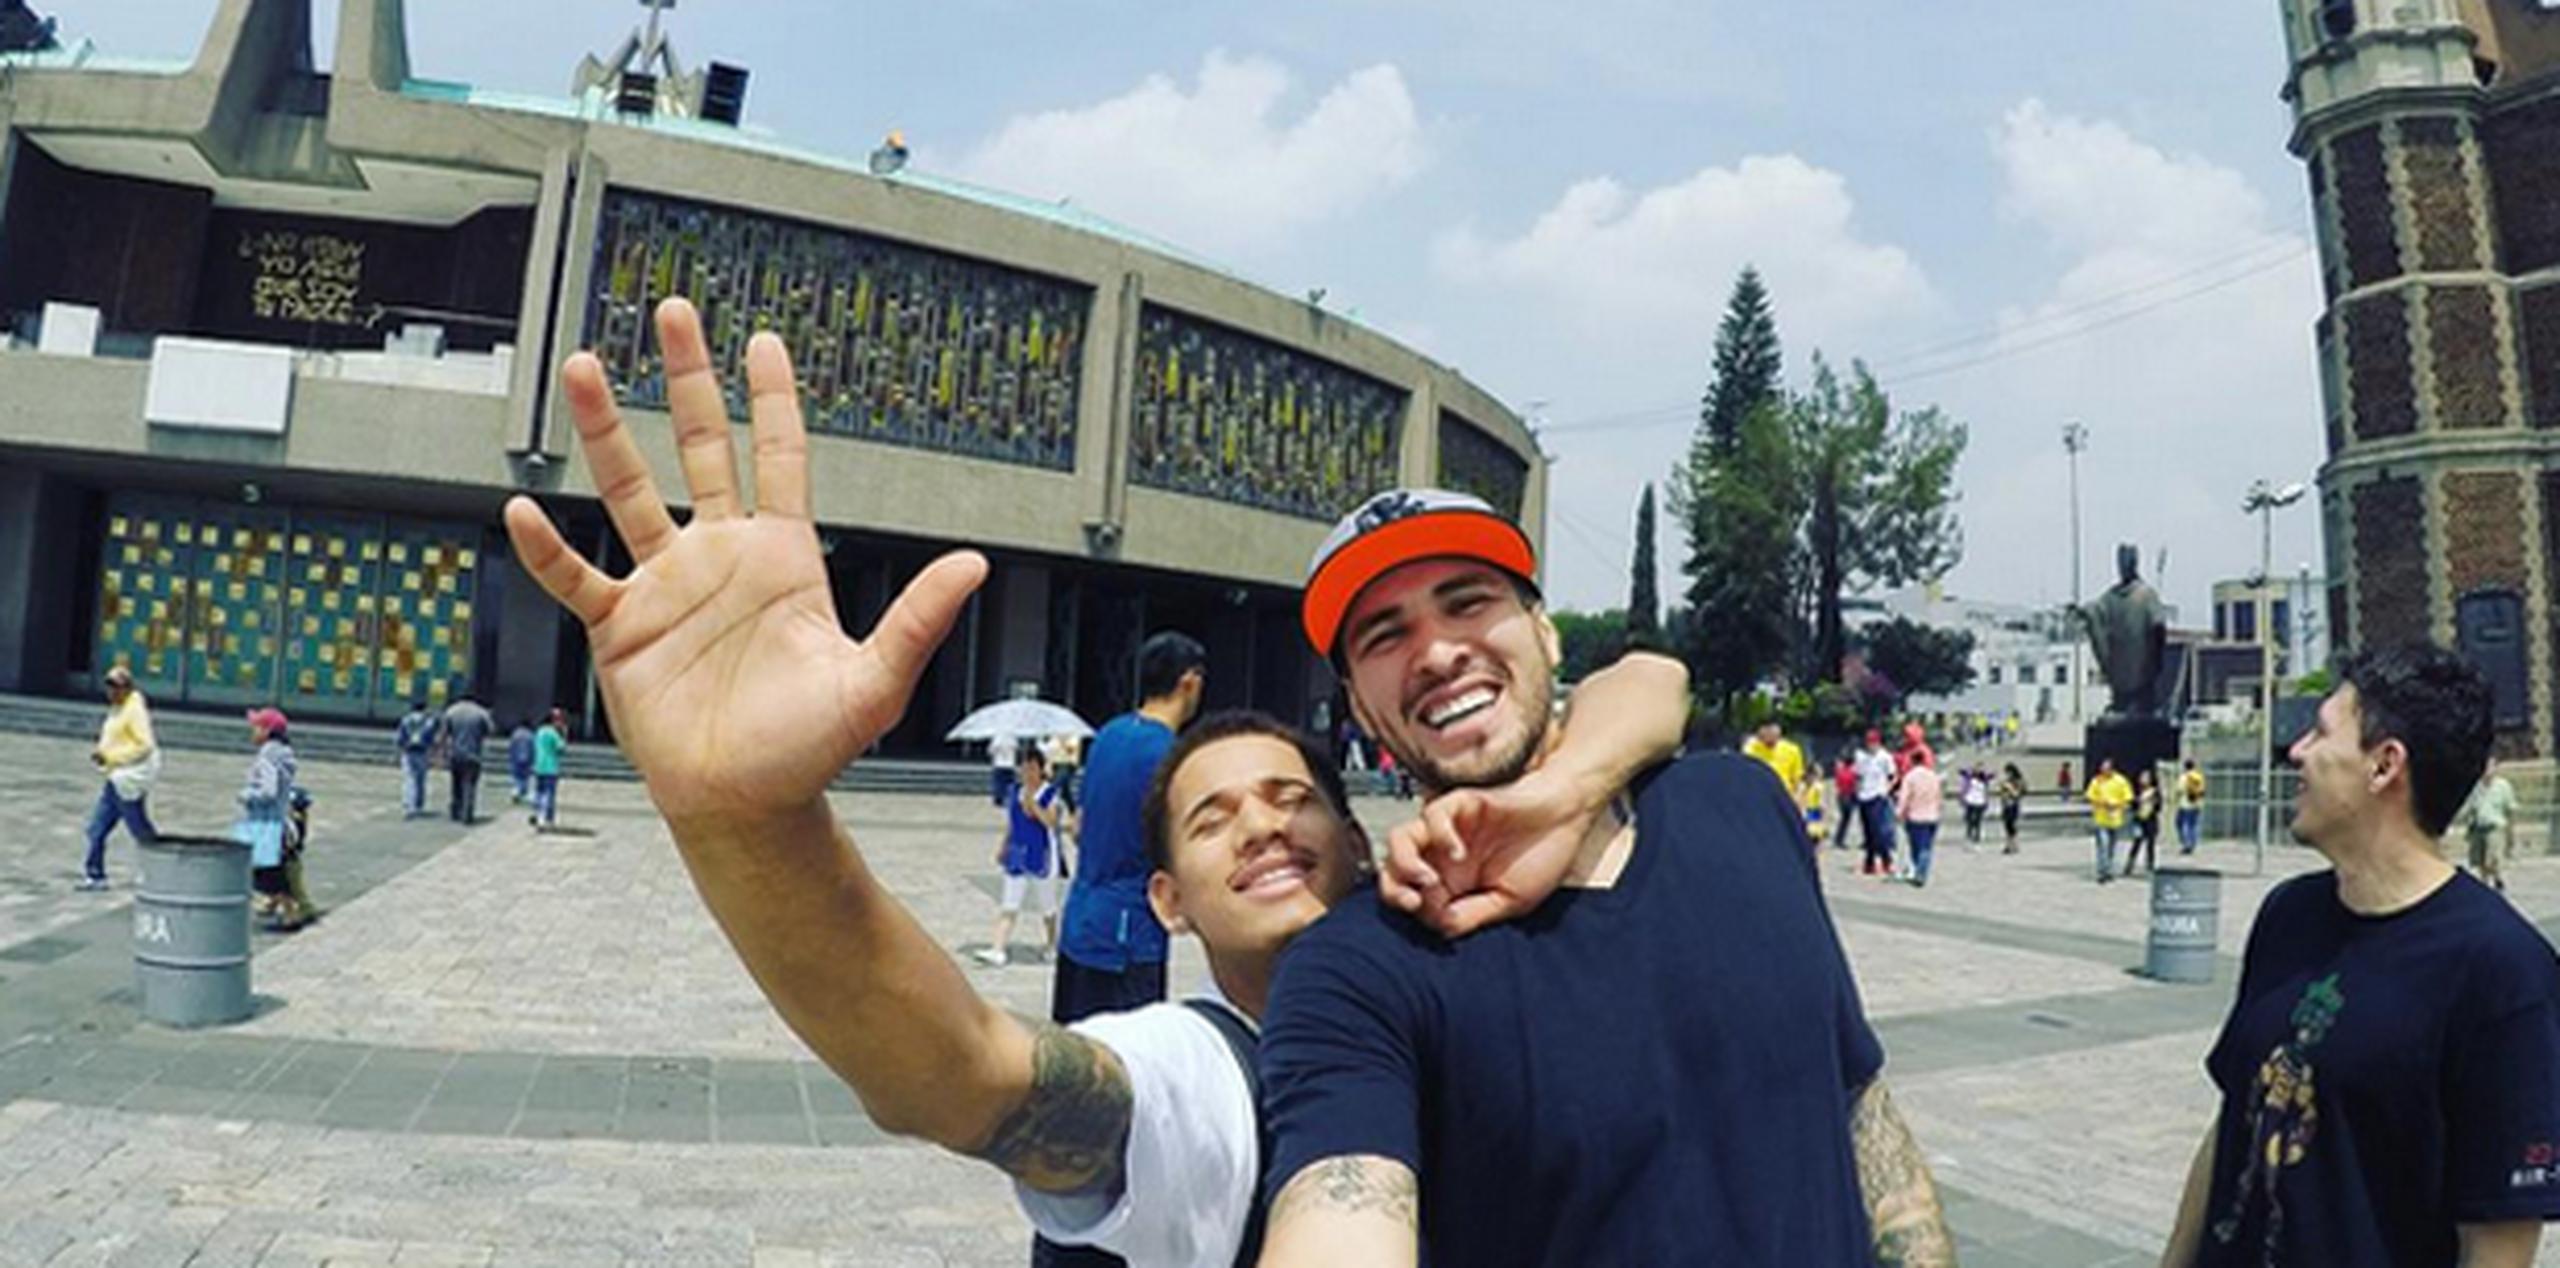 Juan Enderson y Héctor Hernández posan frente al monumento. (Instagram)